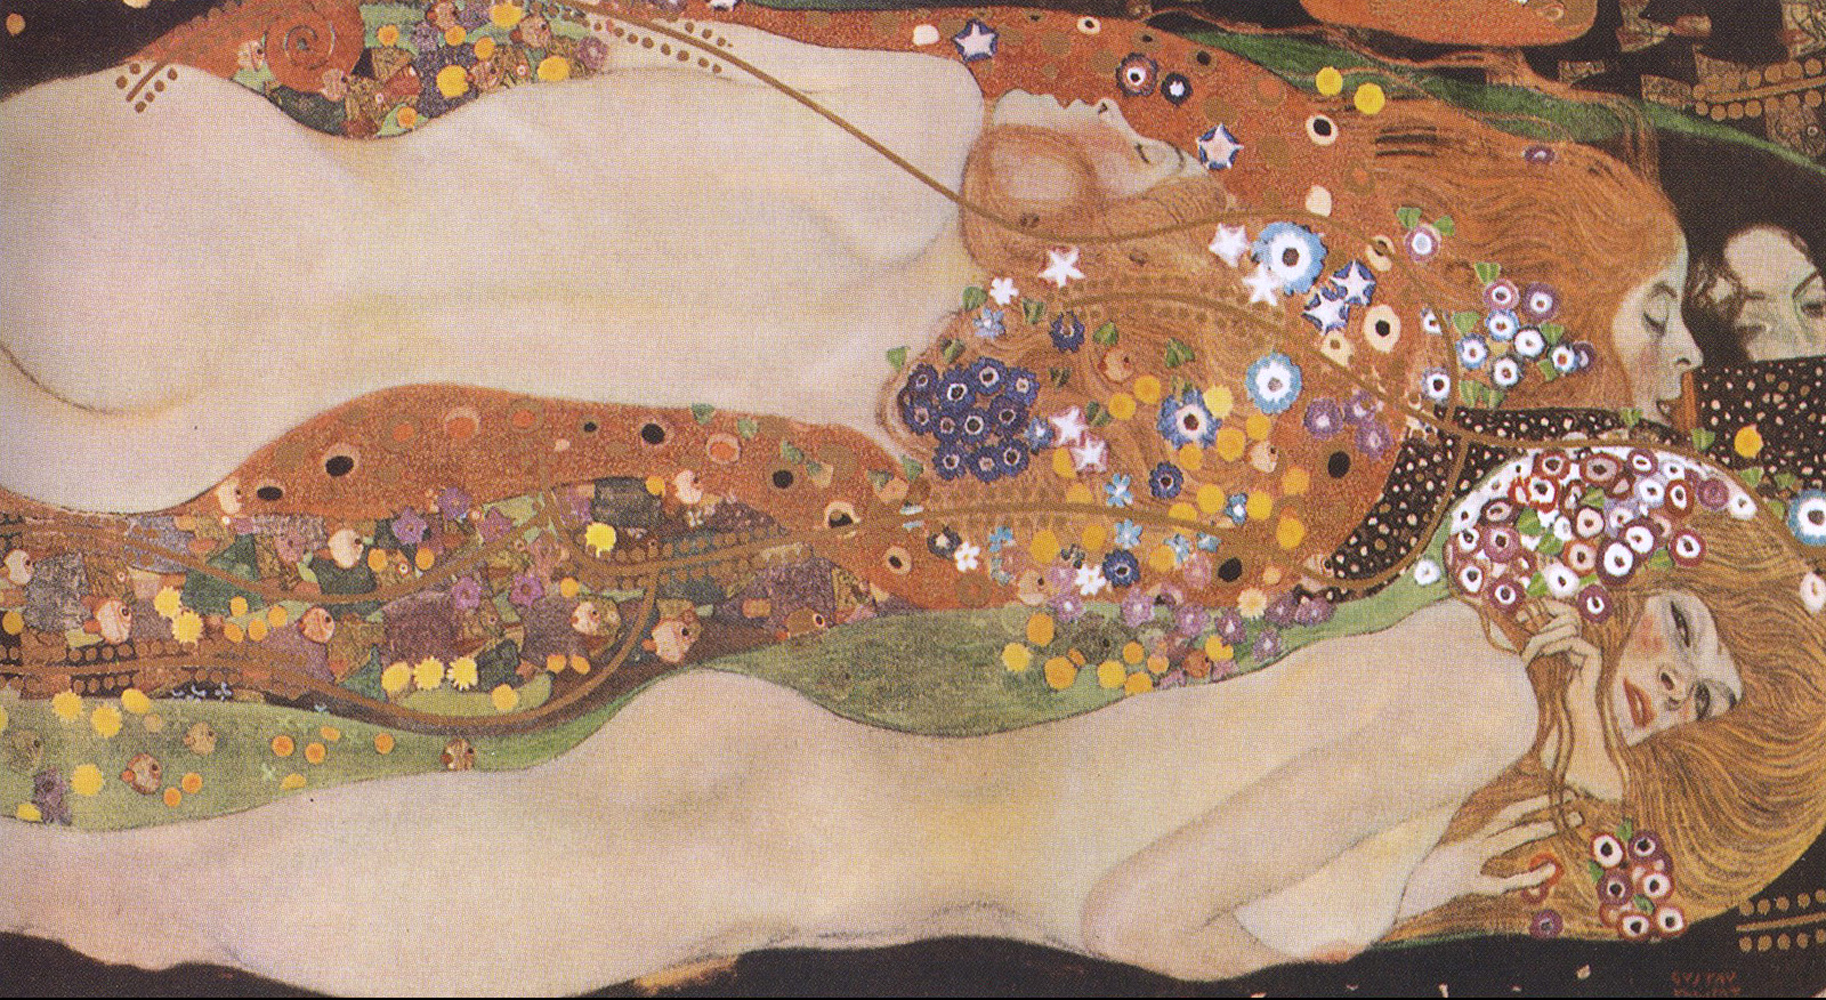 Węże wodne II by Gustav Klimt - 1907 - 80 x 145 cm 